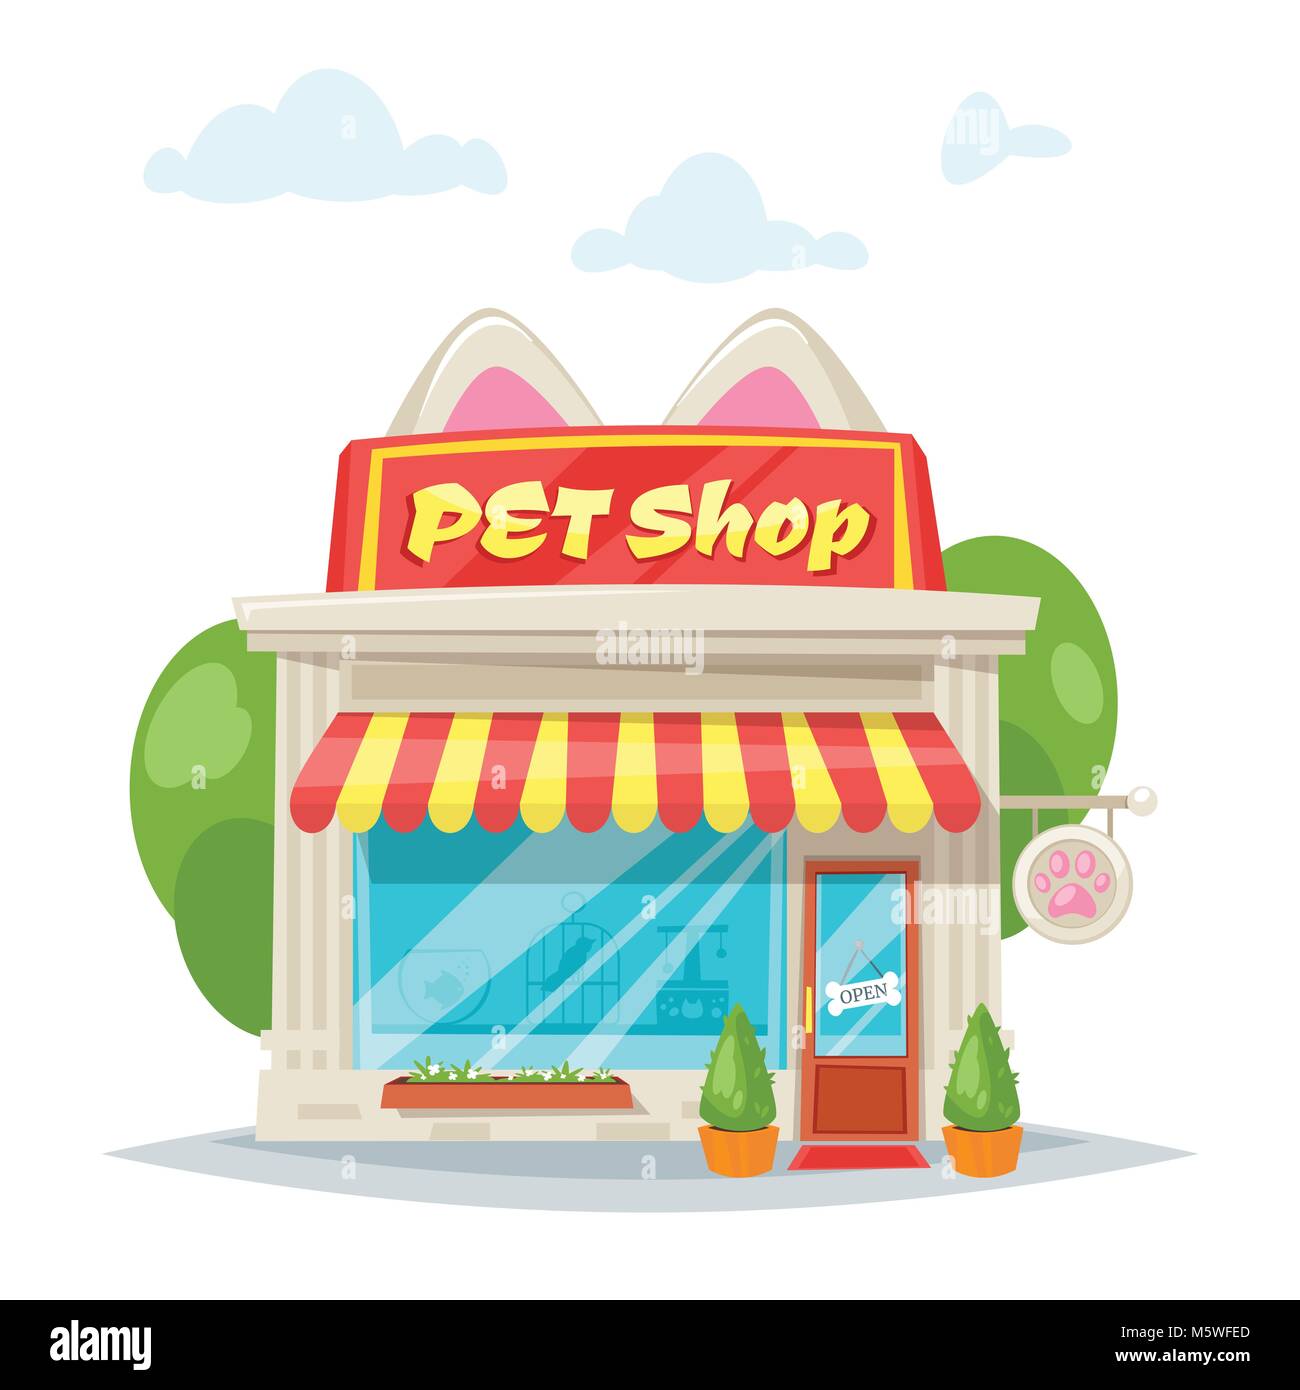 Vektor Cartoon Stil Abbildung: Pet shop Fassade mit hellen Banner mit Katze Ohren. Speichern von außen. Auf weissem Hintergrund. Schaufenster Stock Vektor